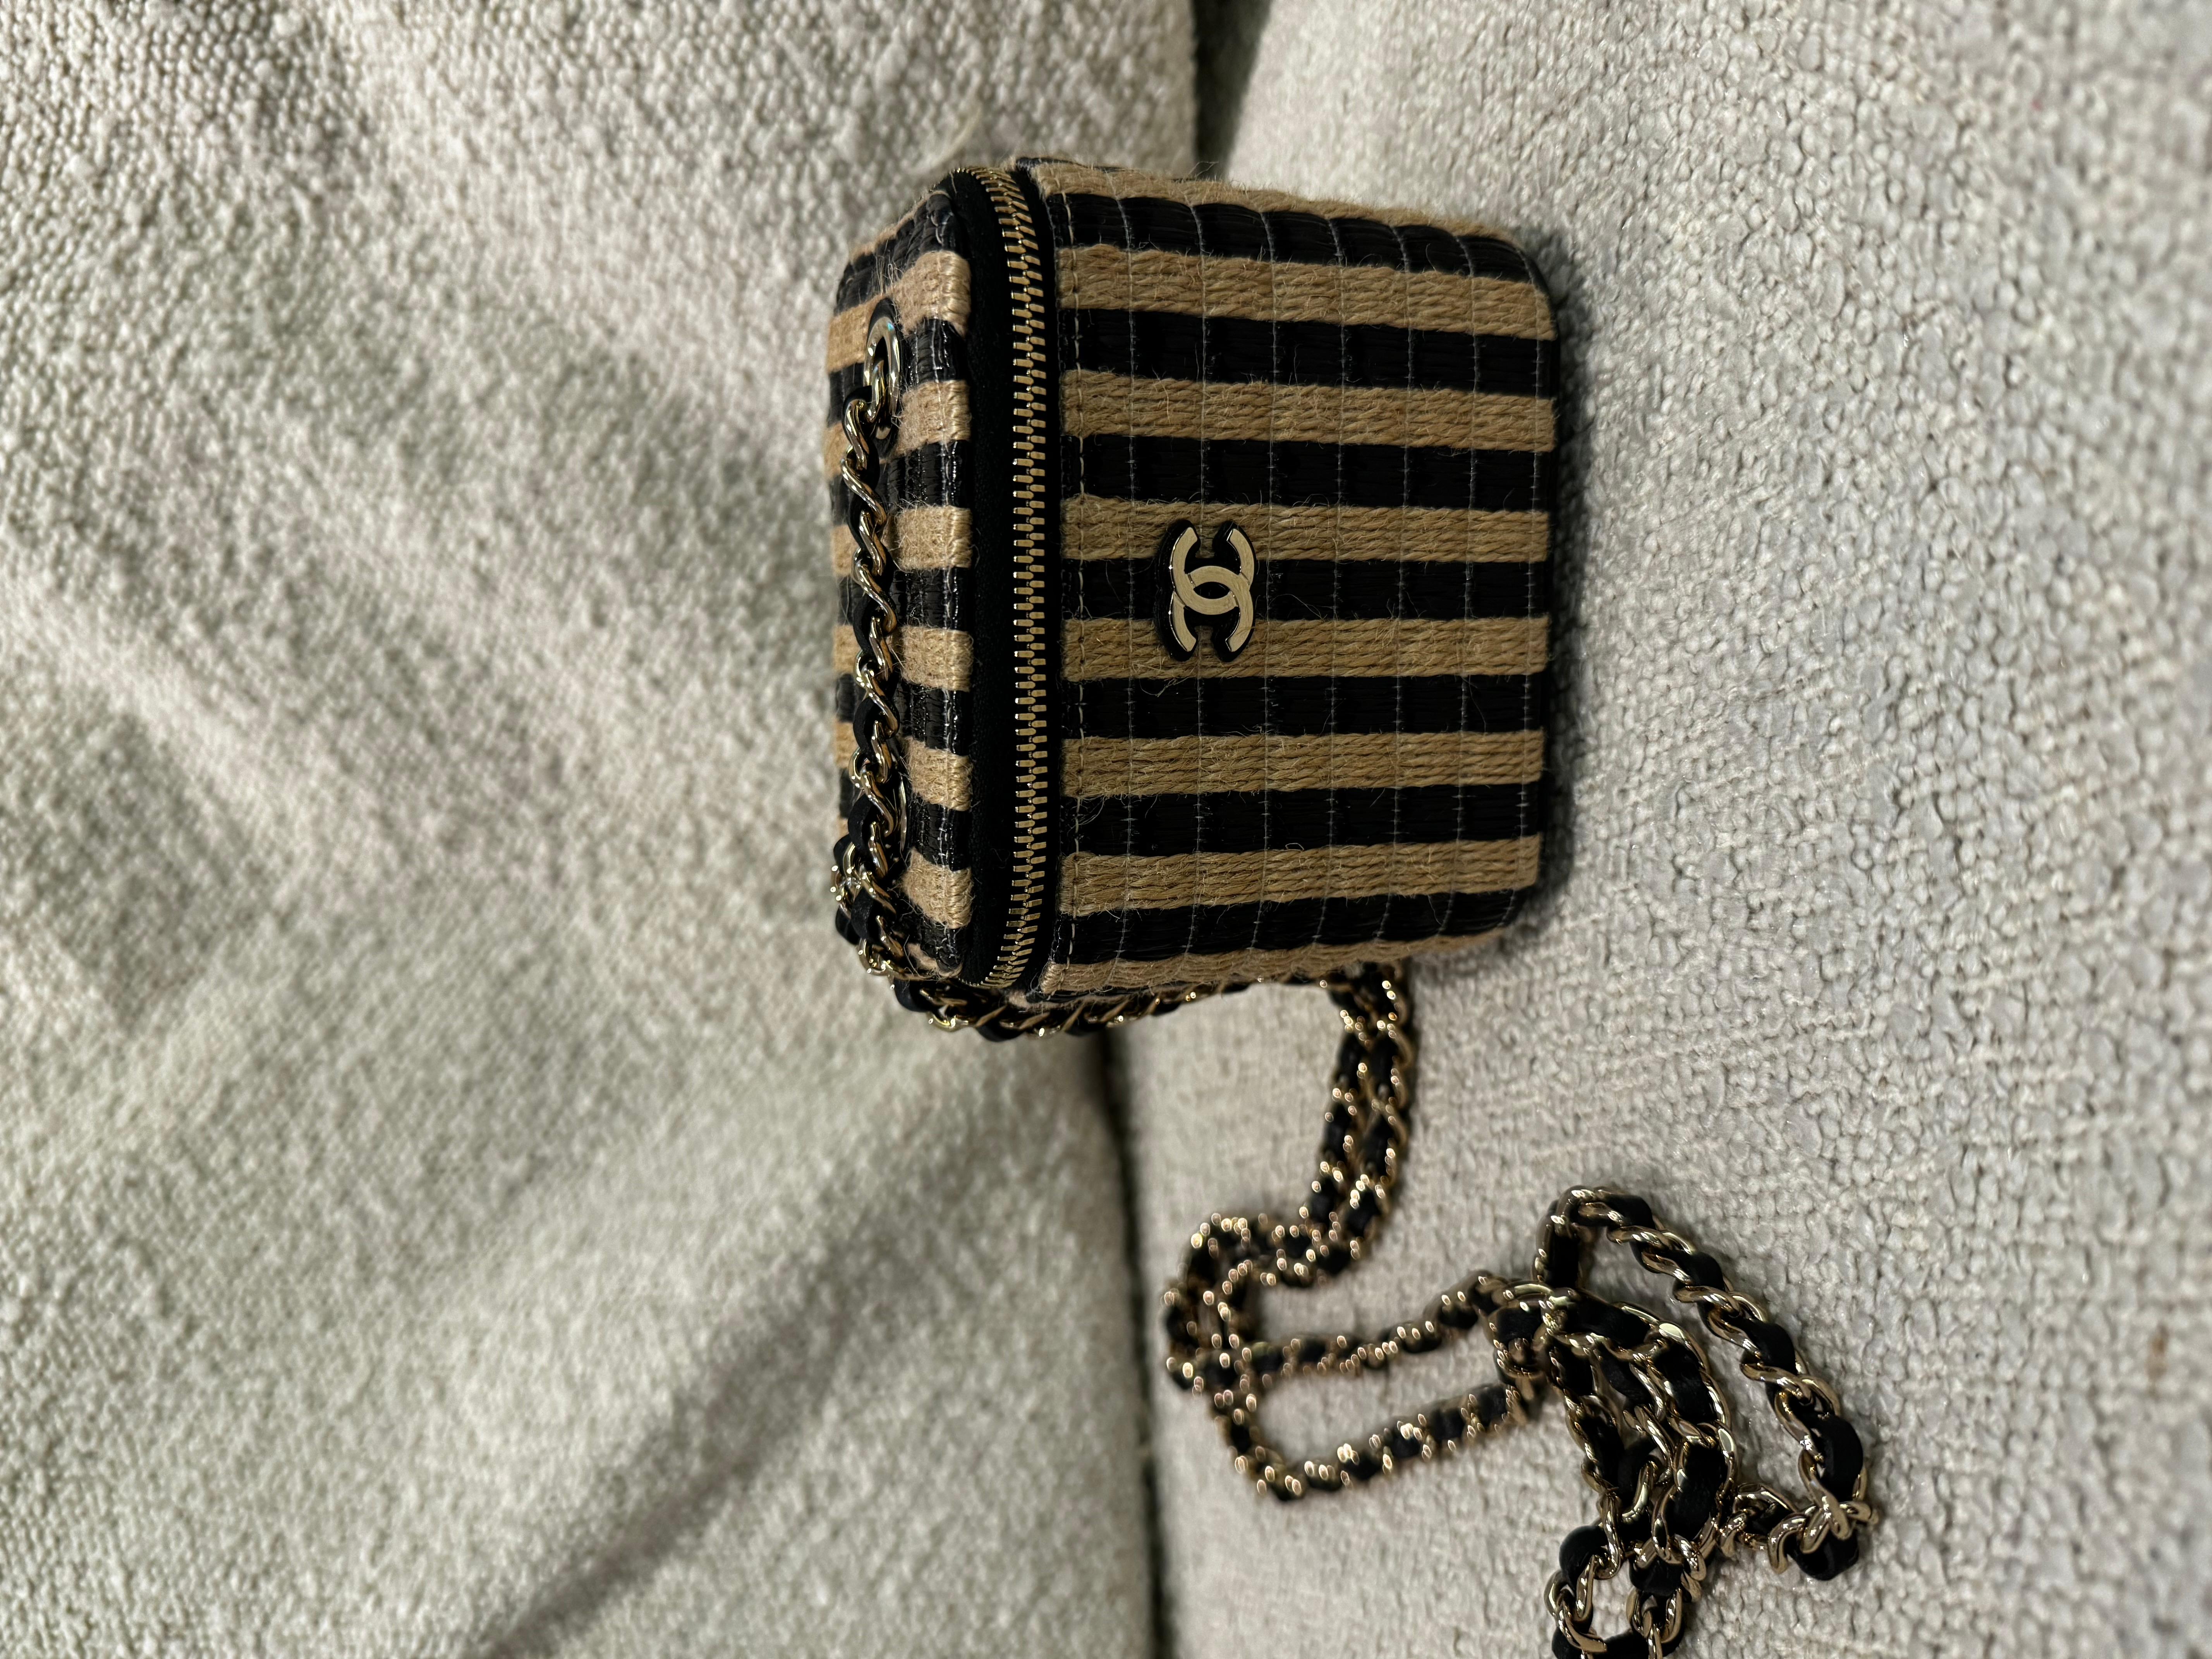 Ein Chanel Tan und Schwarz Raffia Mini Vanity Case Frühjahr/Sommer 2021 (enthält Serienaufkleber, Echtheitskarte, Quittung und Staubbeutel). 
Eine der berühmtesten Koffertaschen, bei Erscheinen sofort ausverkauft. 